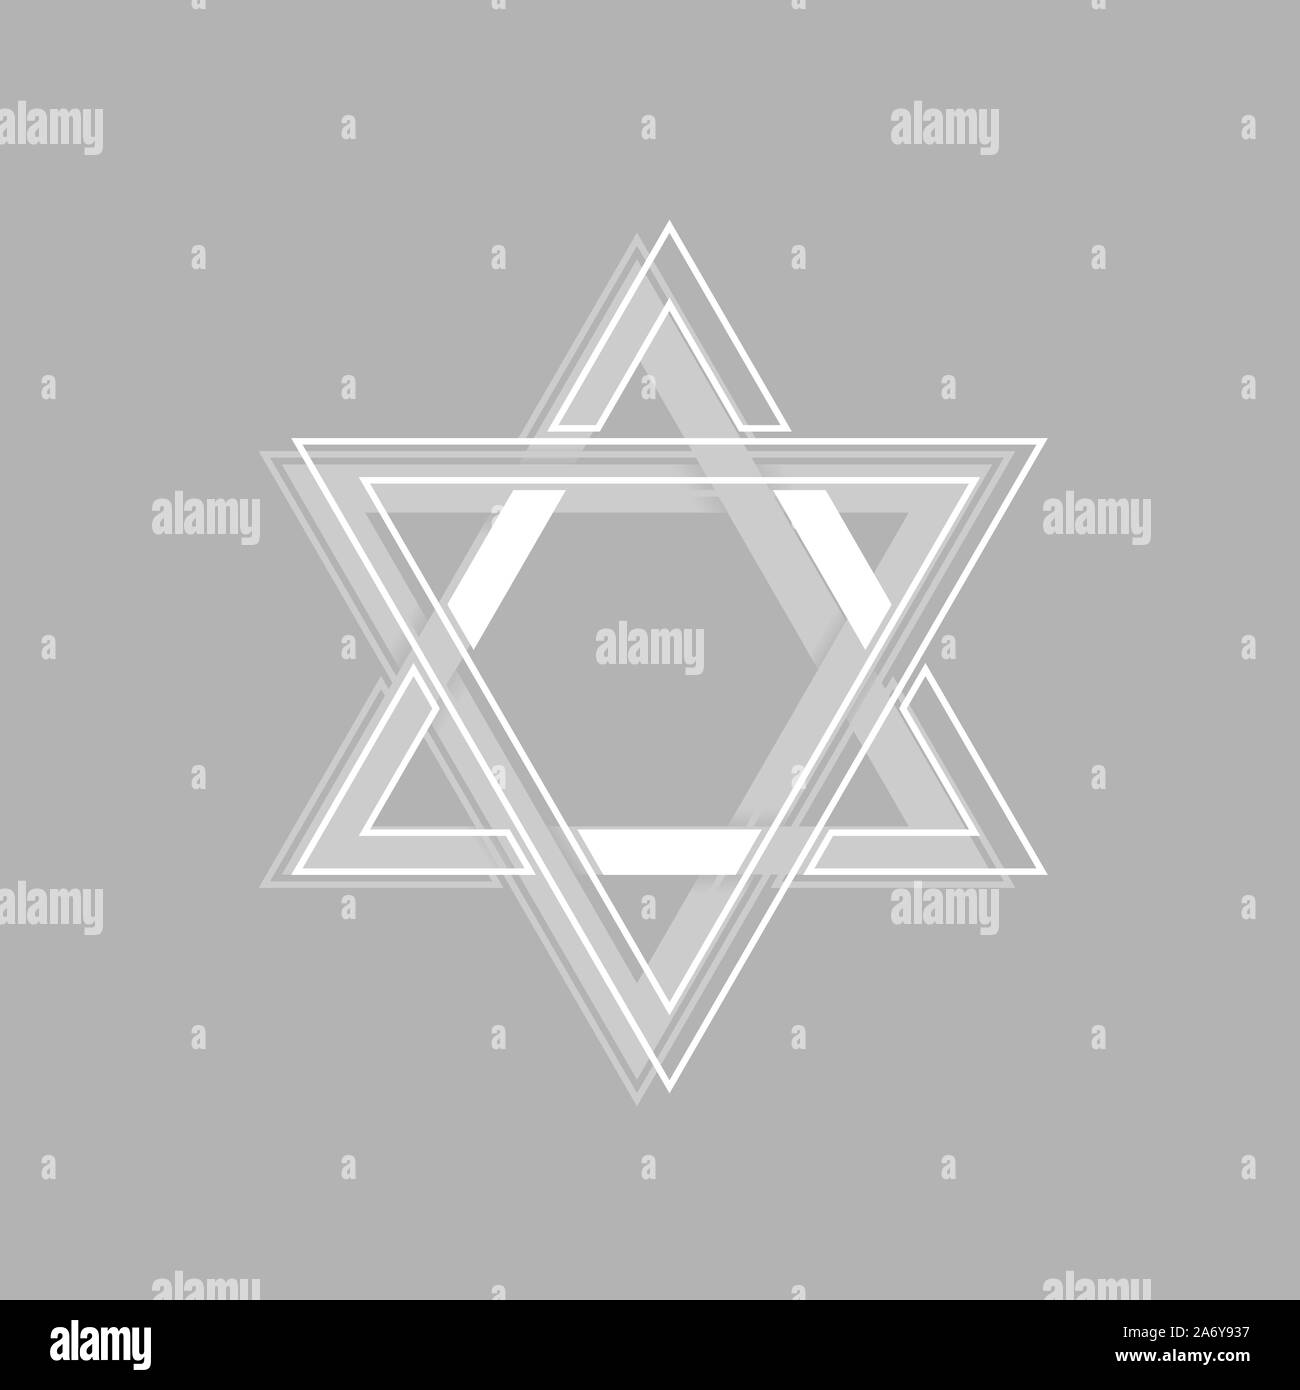 Weißbuch David Stern Symbol. Sechs wies Geometrische star Abbildung, allgemein anerkannten Symbol des modernen jüdischen Identität und Judentum Israel Symbol Stock Vektor